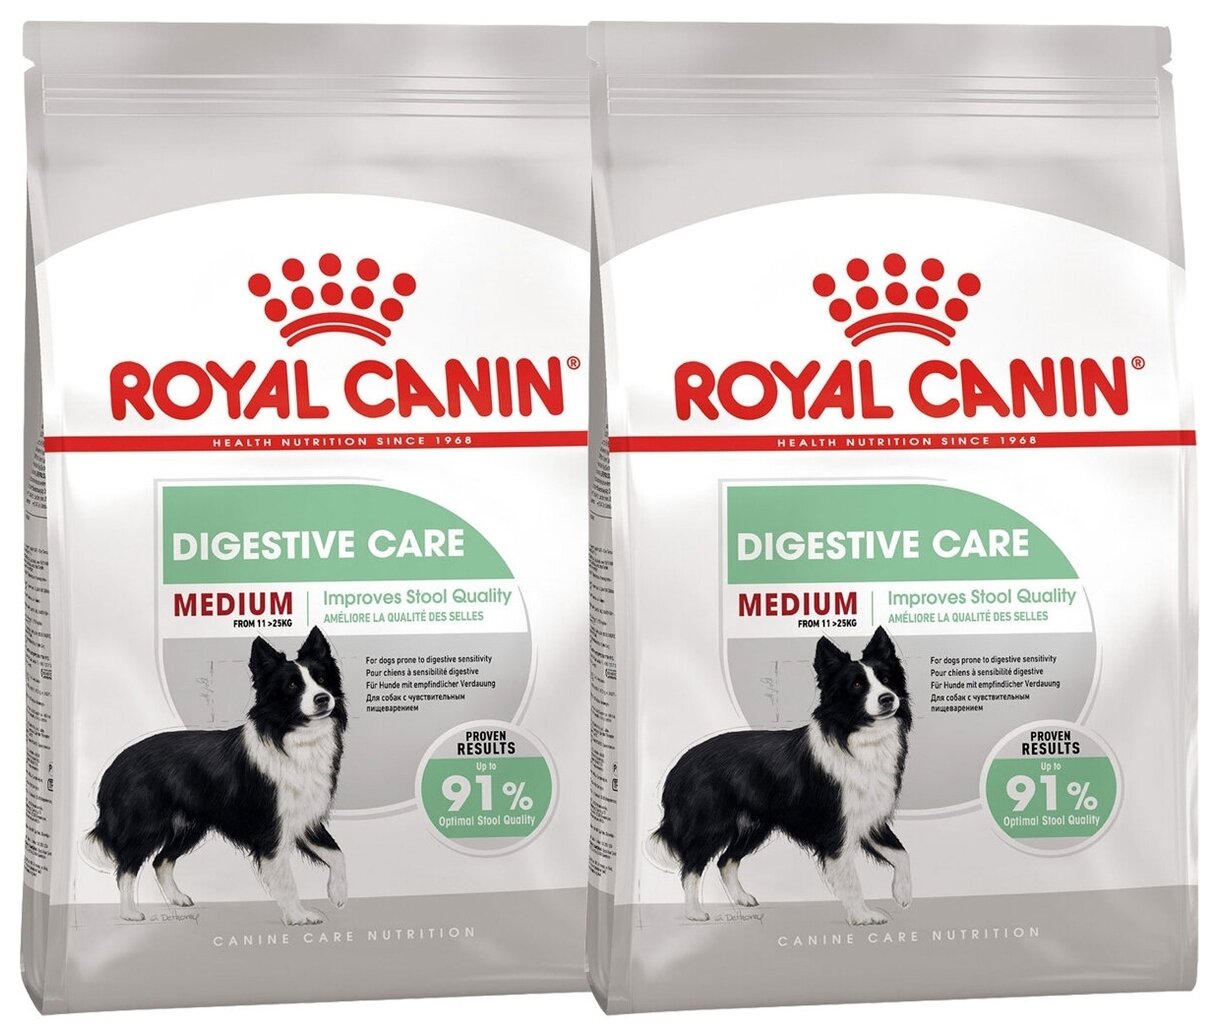 Royal Canin RC Для взрослых собак средних пород имеющих чувствительное пищеварение (Medium Digestive Care) 30160300R0 | Medium Digestive Care 3 кг 52604 (2 шт)